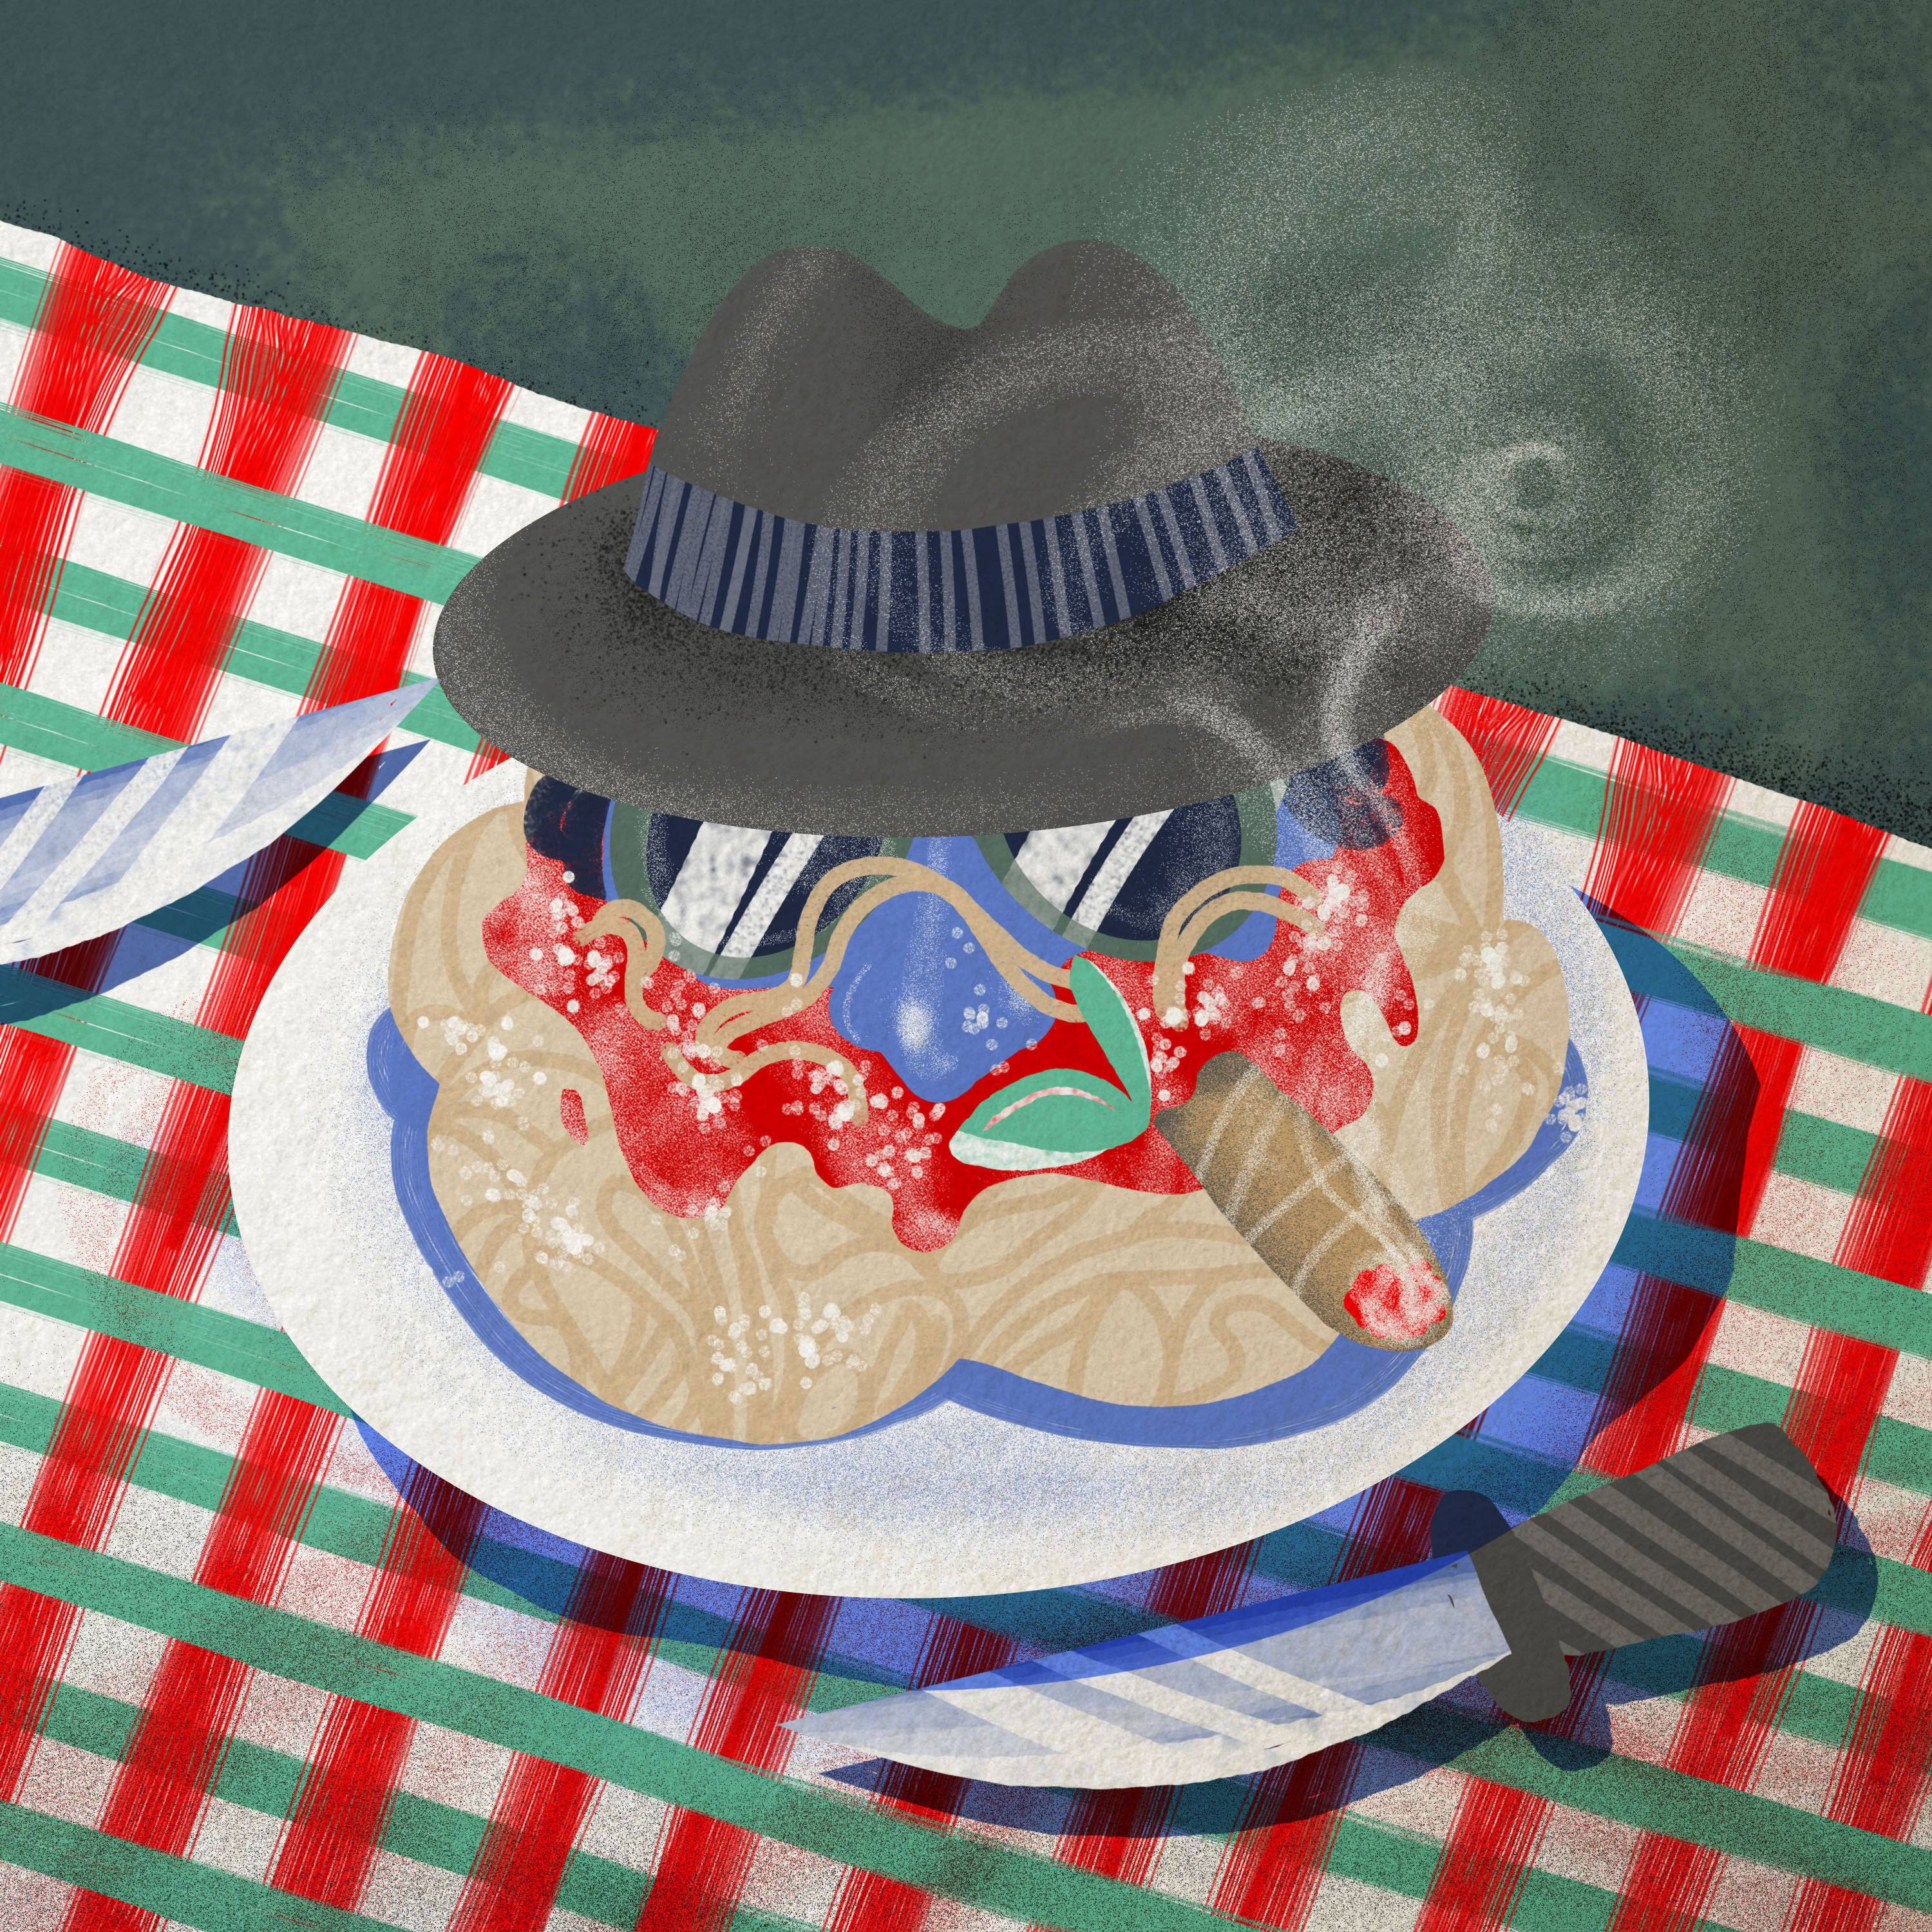 ilustracja przedstawia talerz spaghetti z cygarem, ciemnymi okularami i kapeluszemrz